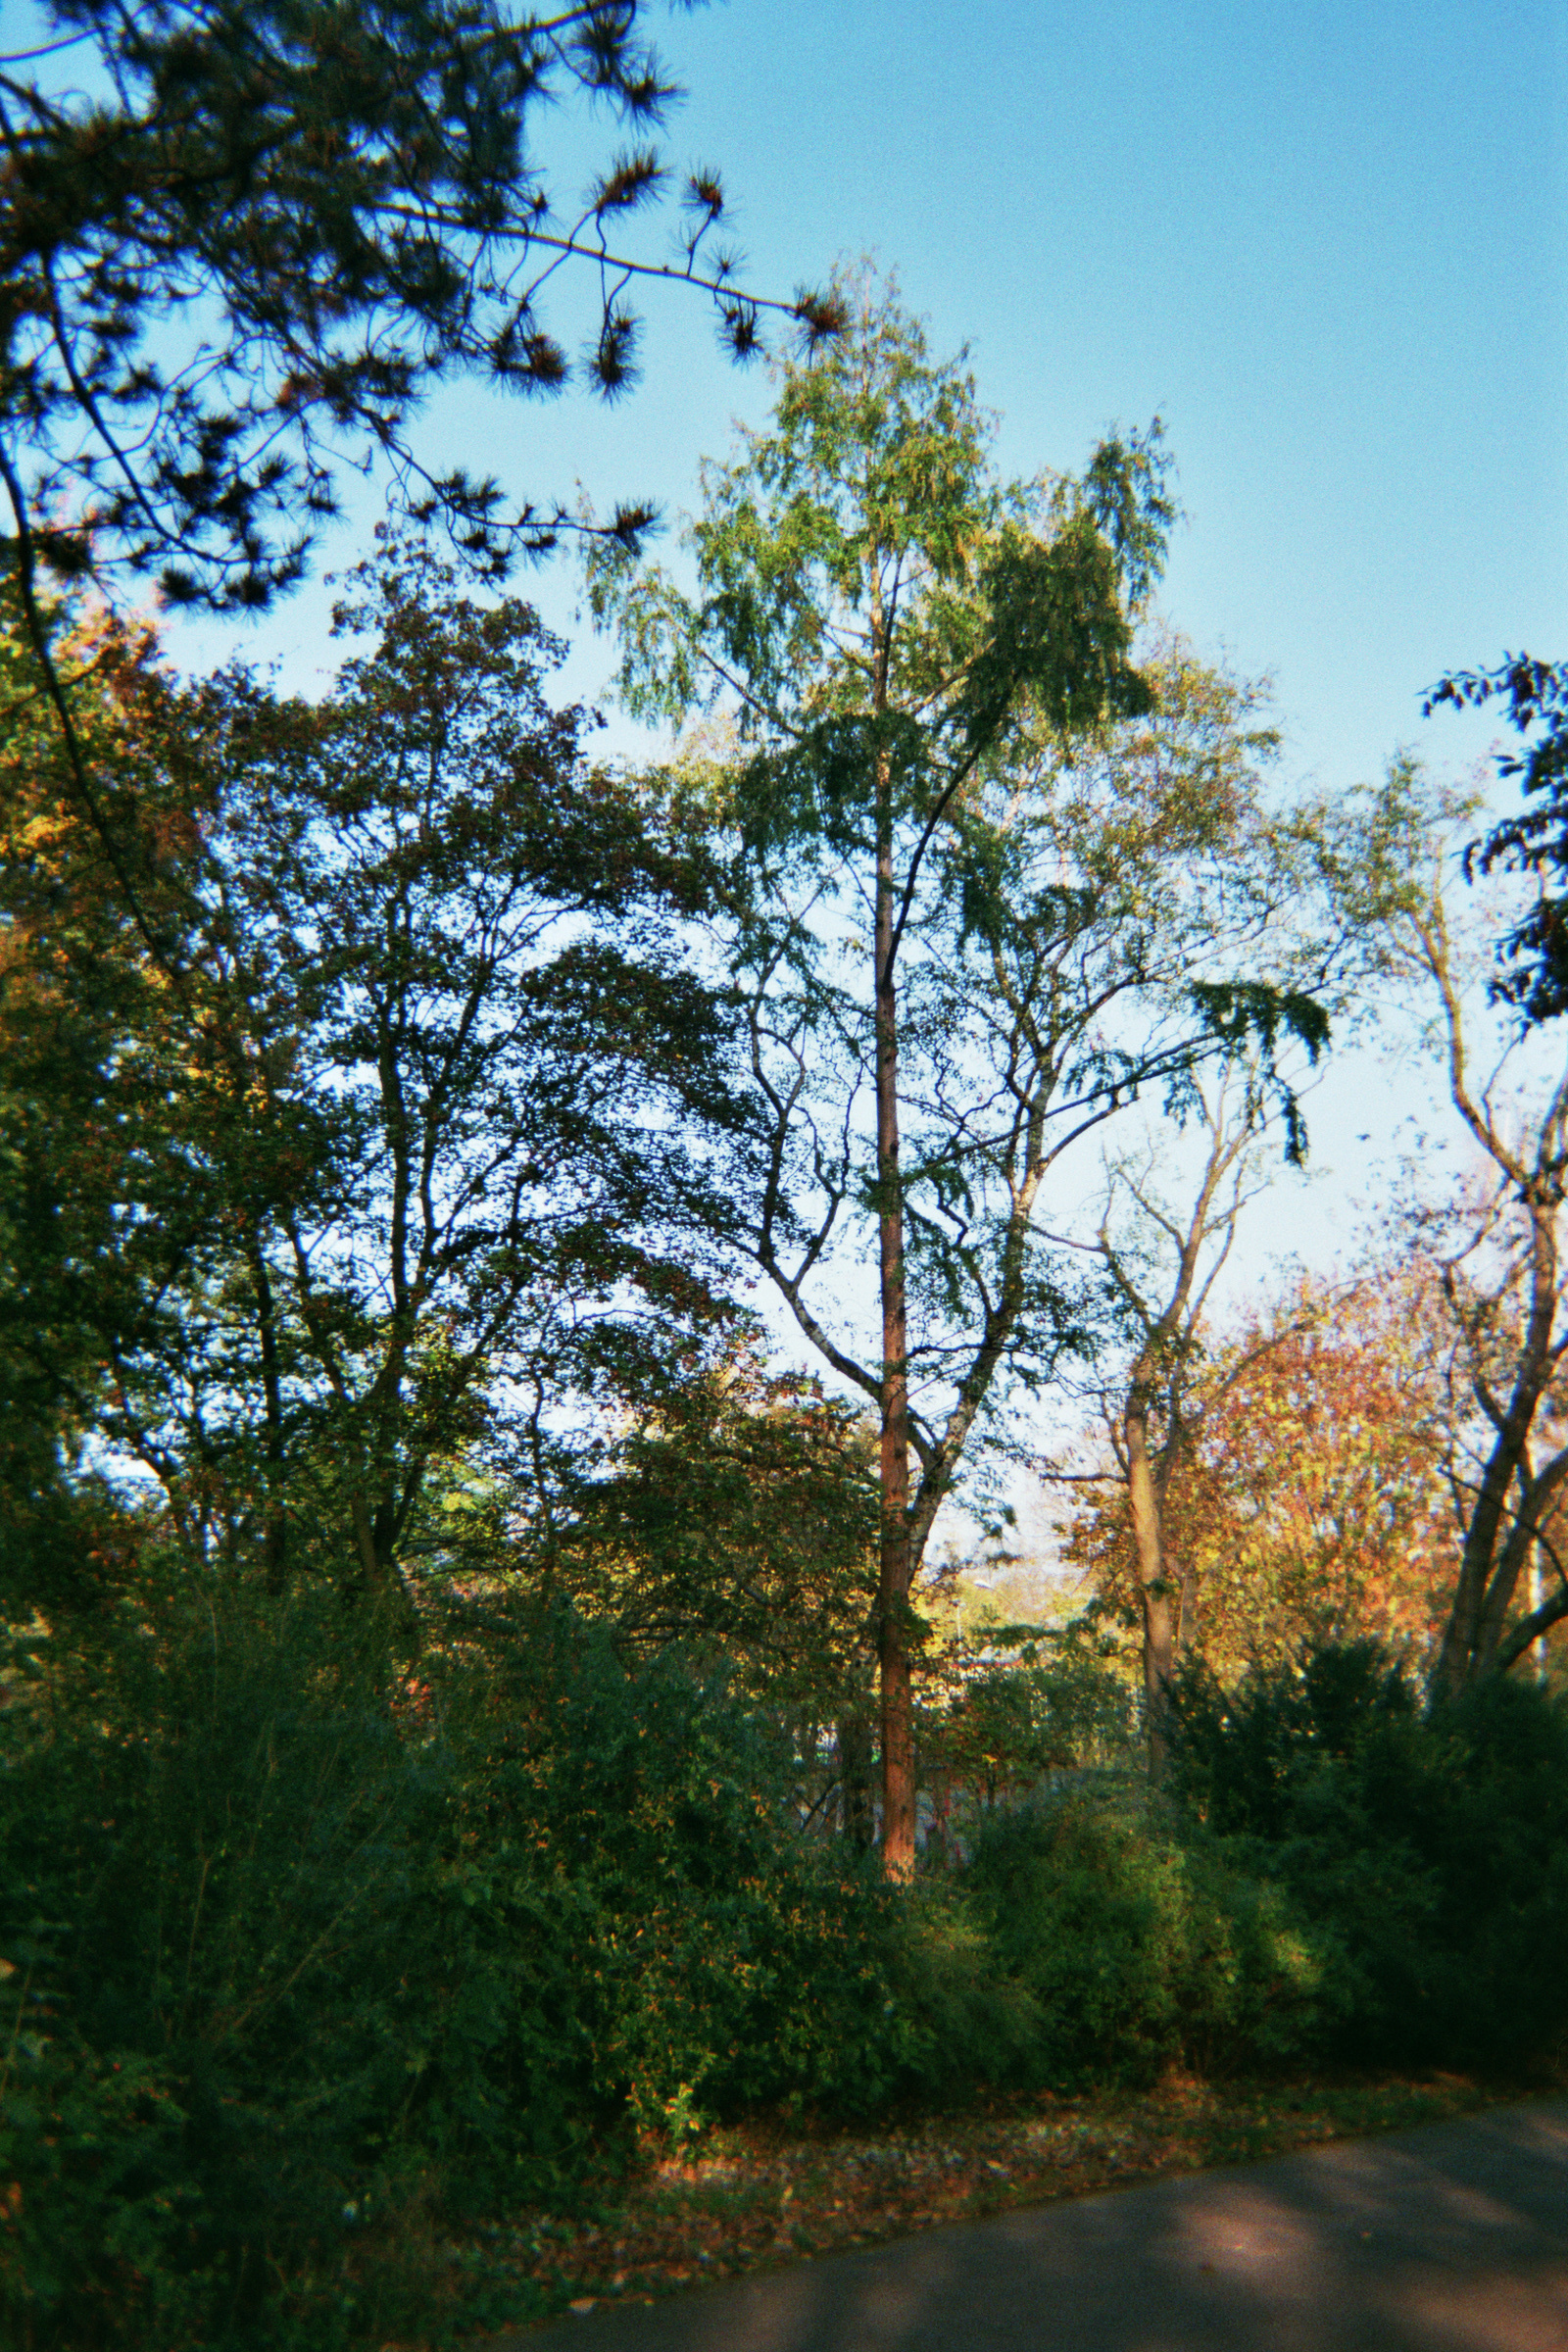 Der Urweltmammutbaum im Park Thomashöhe in Berlin im Bezirk Neukölln. Am 29. Oktober im Jahre 2014. Foto: Erwin Thomasius.